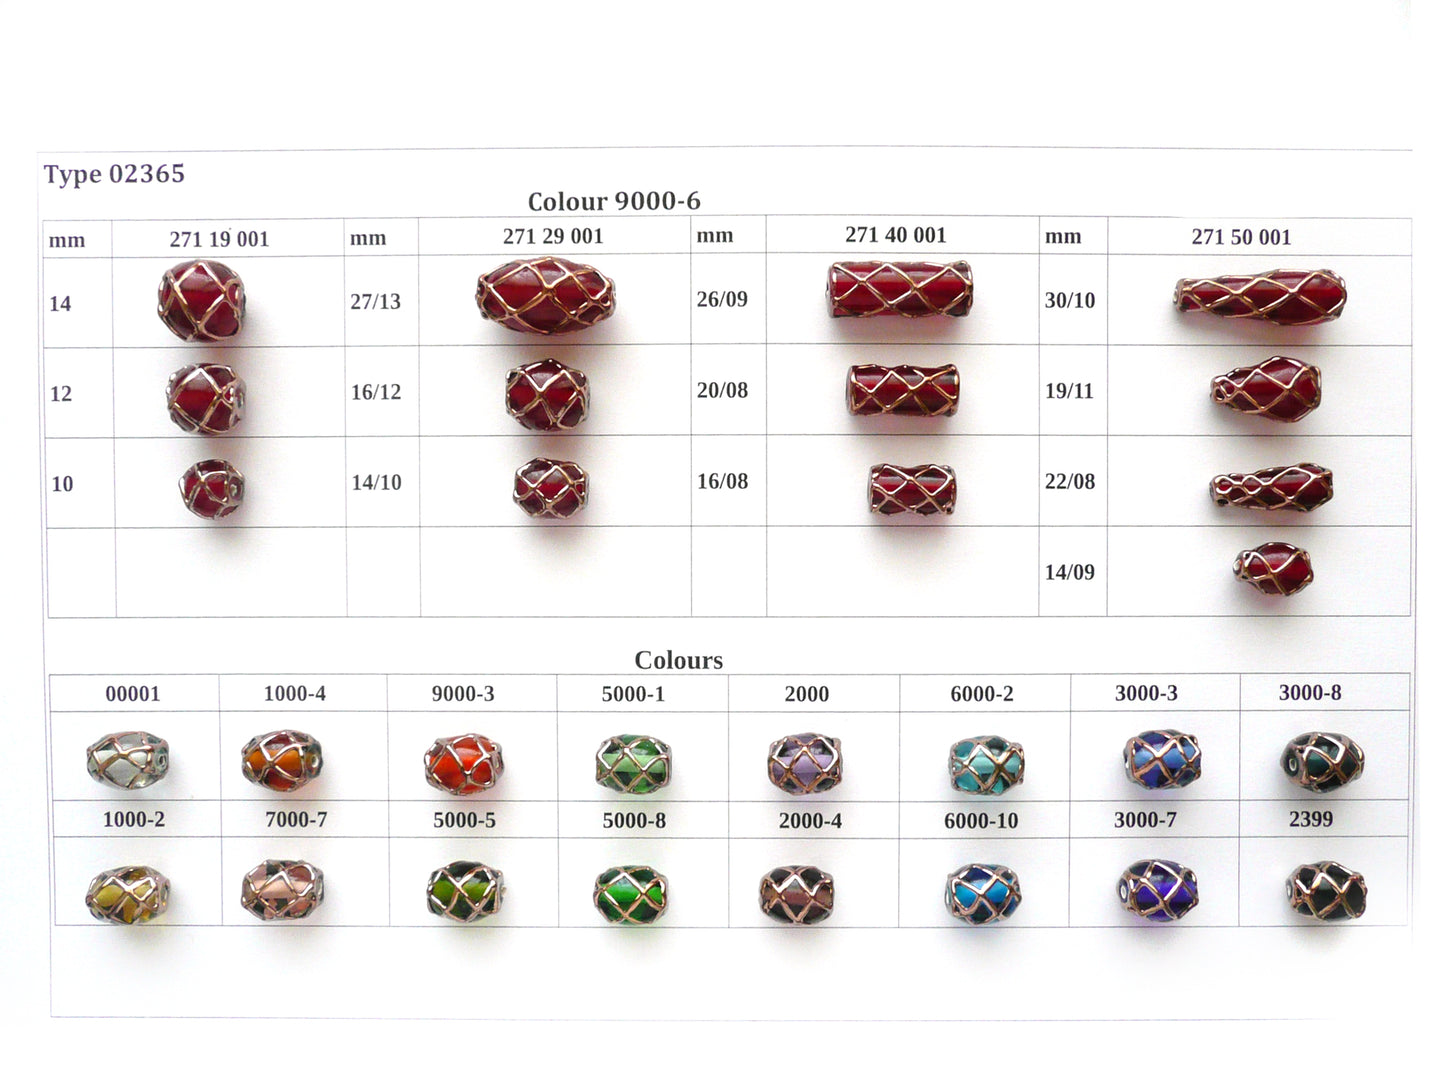 30 pcs Lampwork Beads 2365 / Small Cylinder (271-40-001), Handmade, Preciosa Glass, Czech Republic